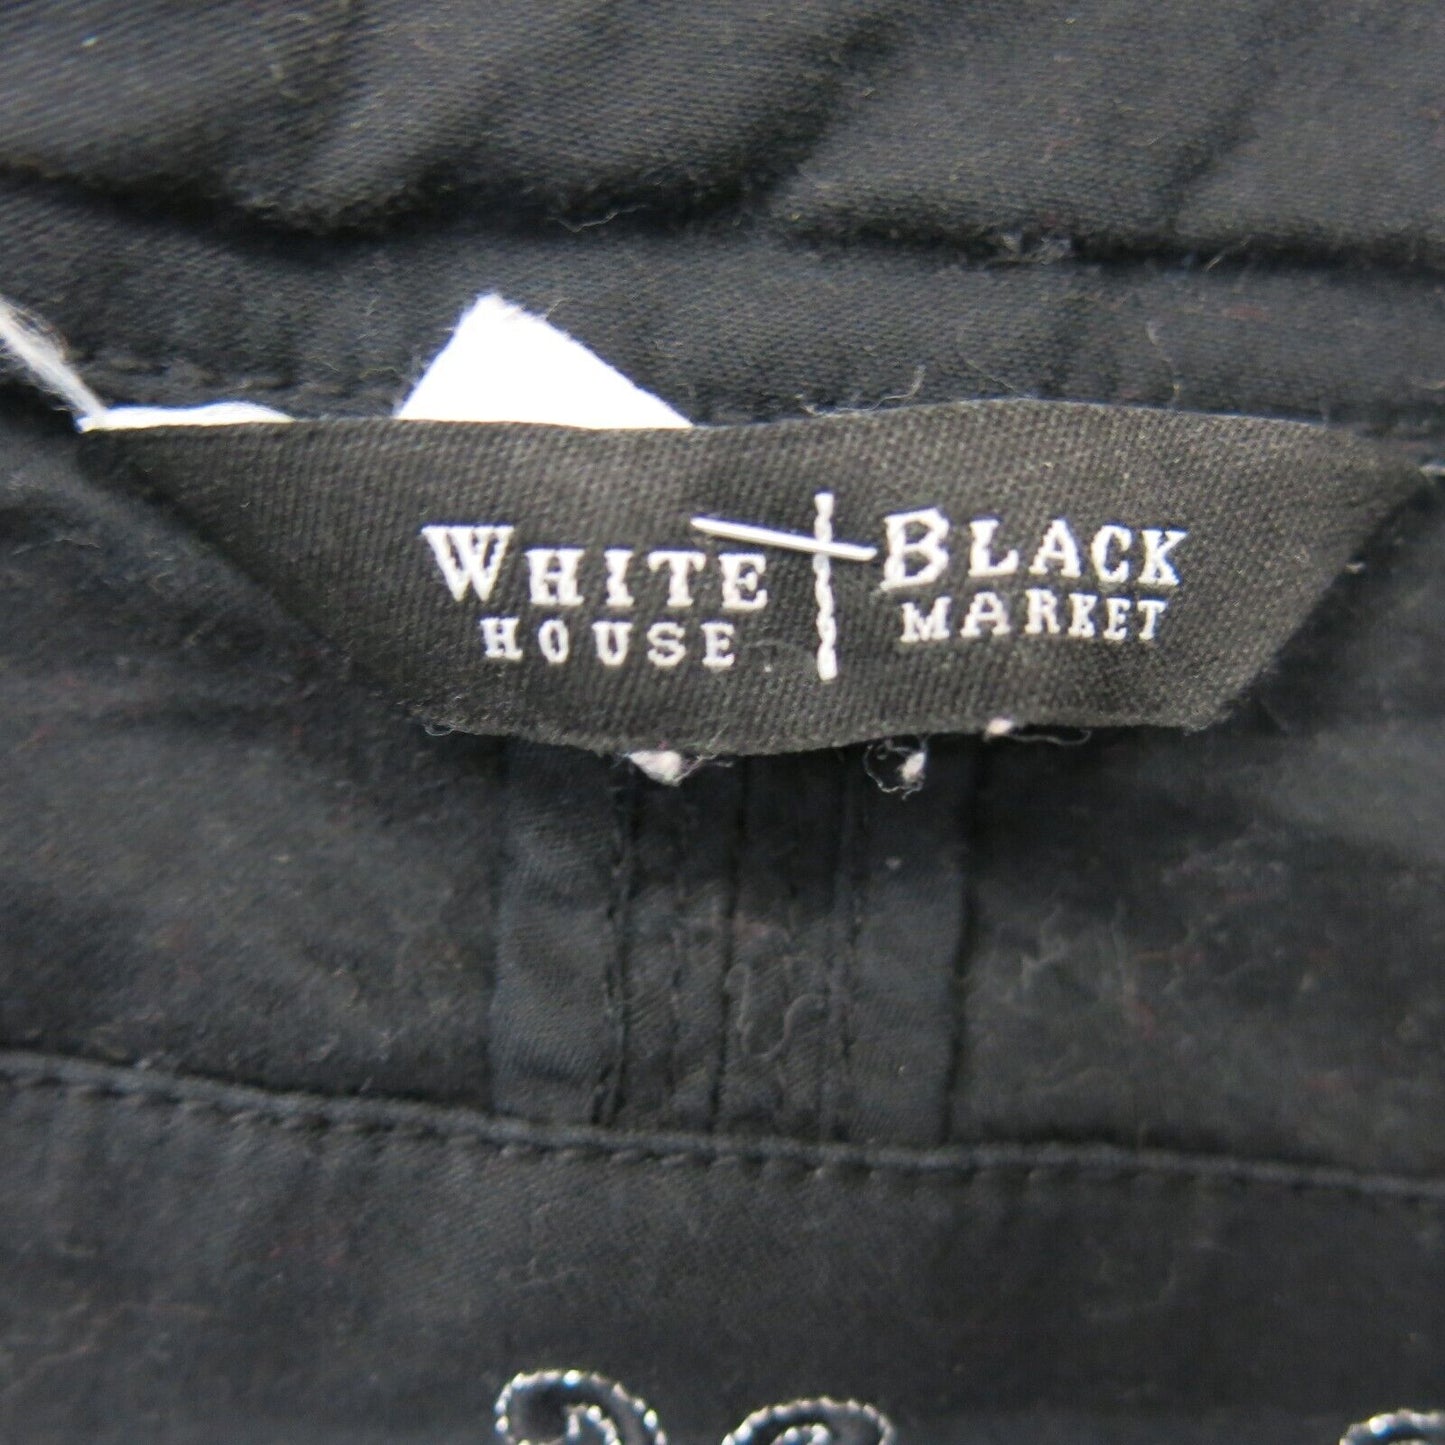 White House Black Market Womens Casual Jacket Long Sleeve Pocket Black Size 4